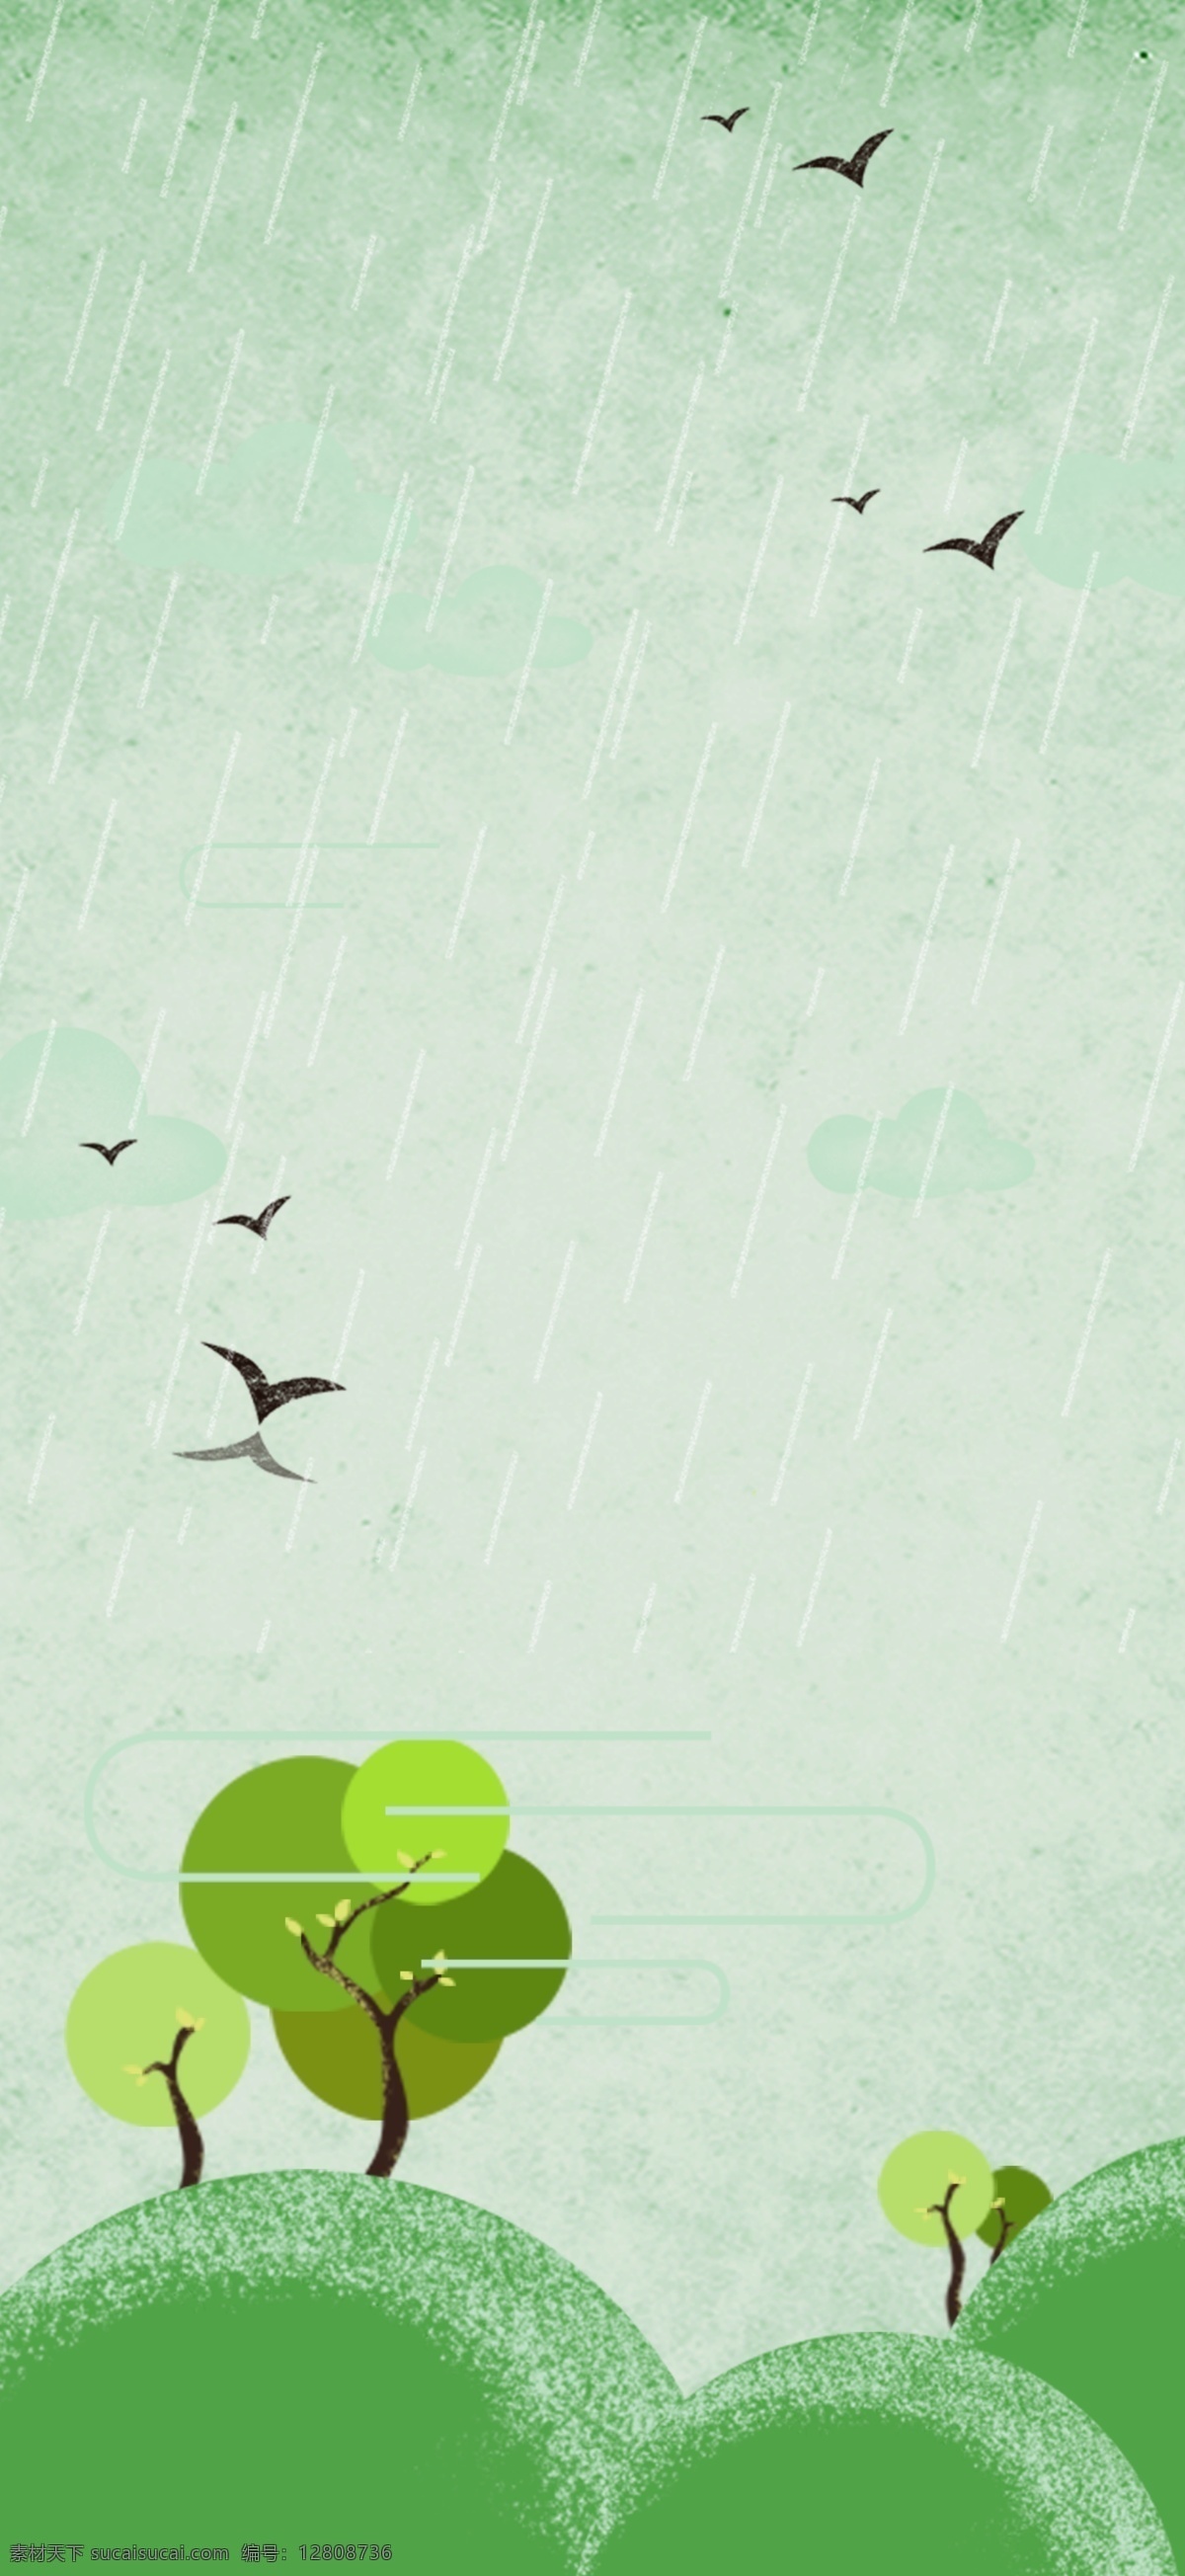 斜风细雨 中 小燕子 背景 春天 细雨 燕子 绿色